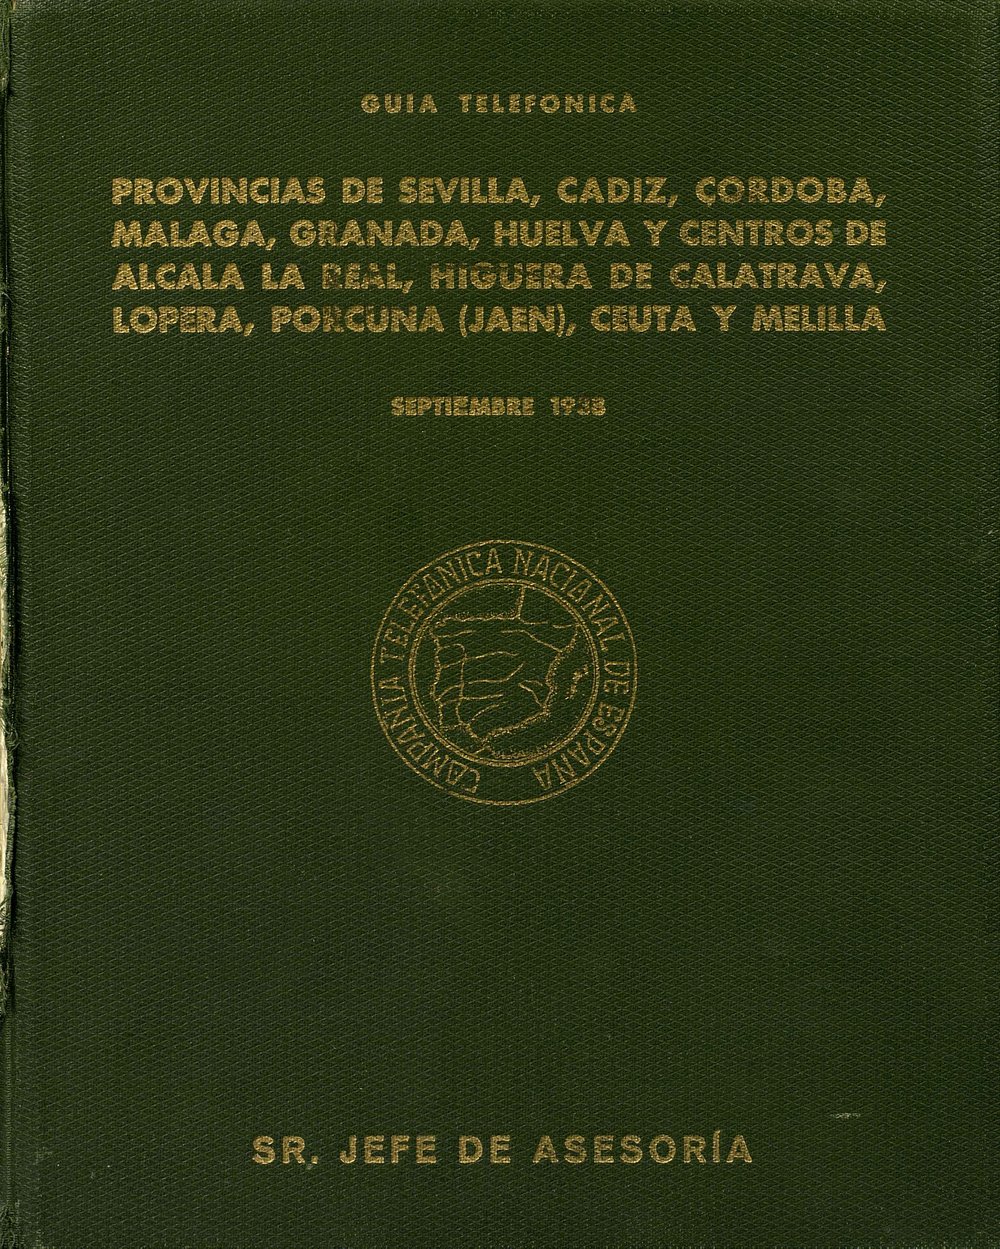 TELEPHONE DIRECTORY : PROVINCES OF SEVILLA, CÁDIZ, CÓRDOBA, MÁLAGA, GRANADA, HUELVA, AND CENTRES OF ALCALÁ LA REAL, HIGUERA DE CALATRAVA, LOPERA, PORCUNA (JAÉN), CEUTA AND MELILLA